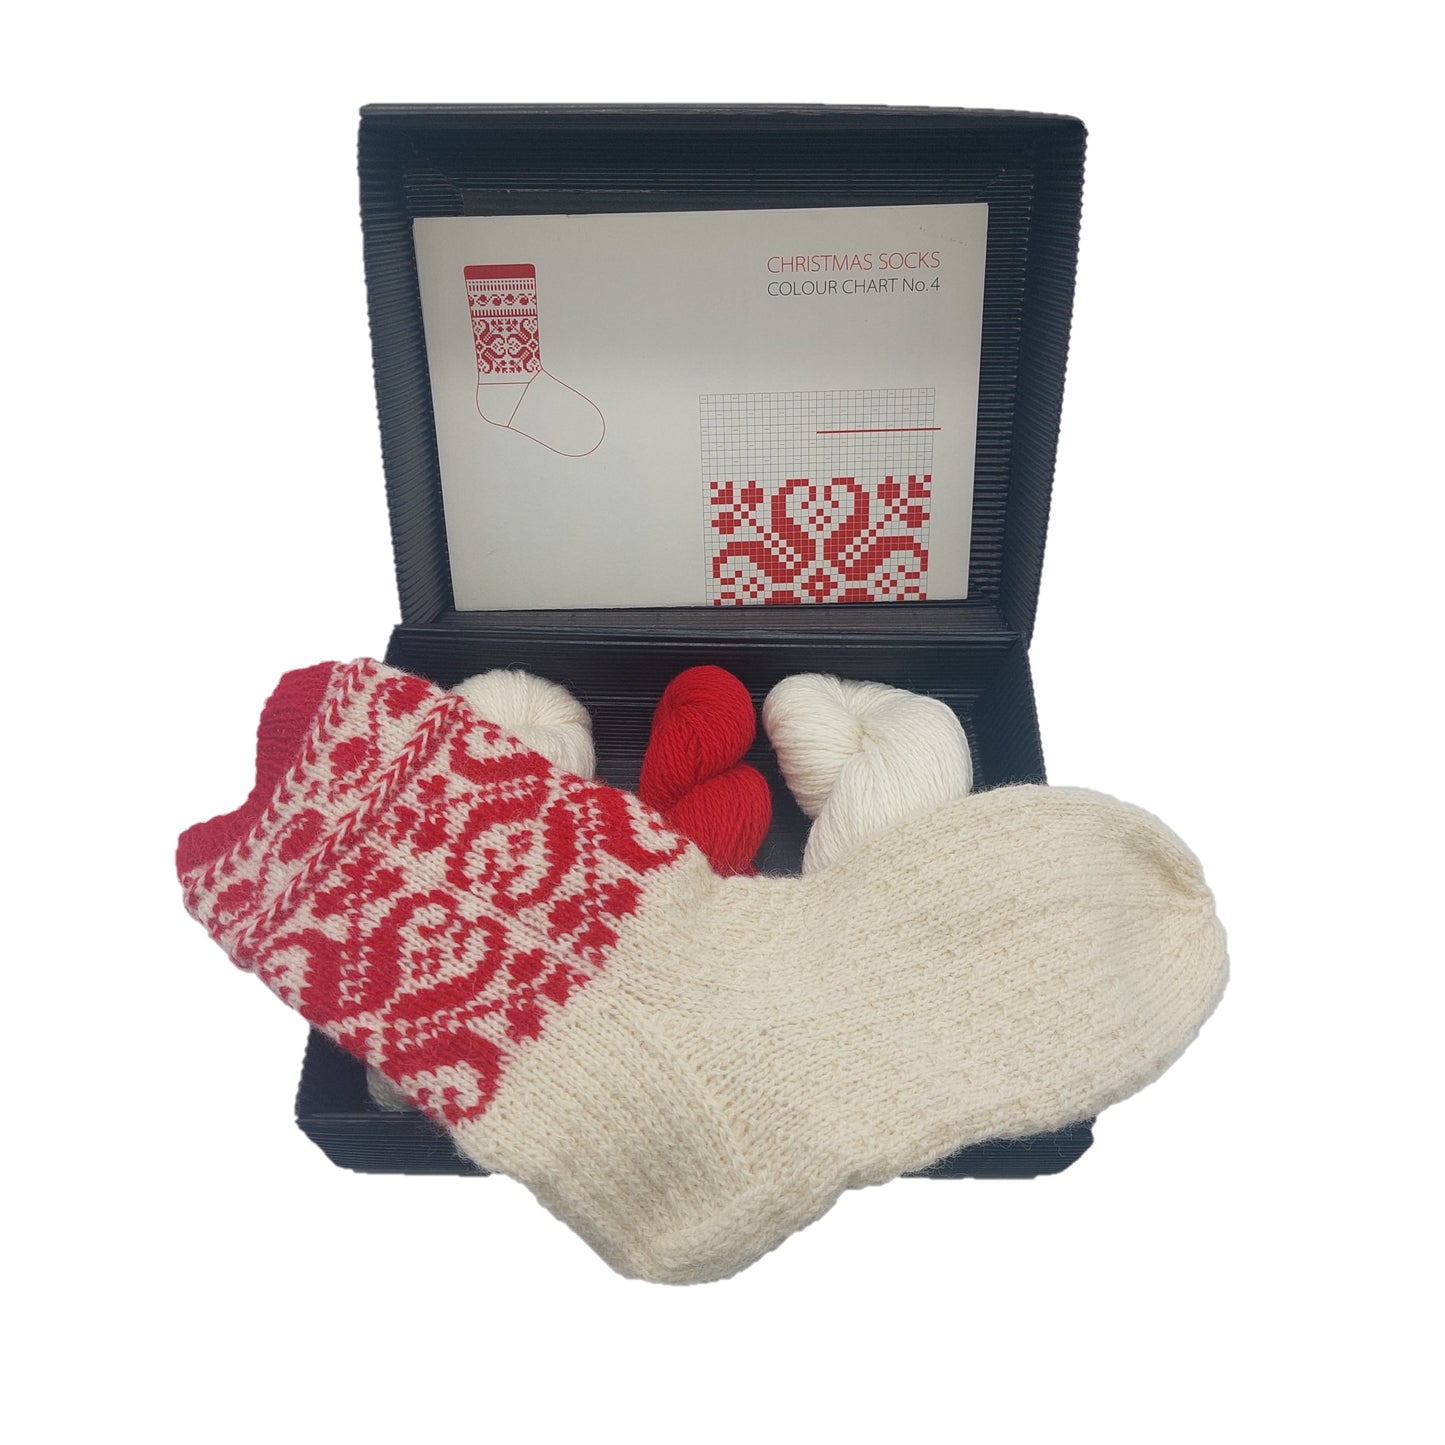 Christmas socks knitting kit Nr.4